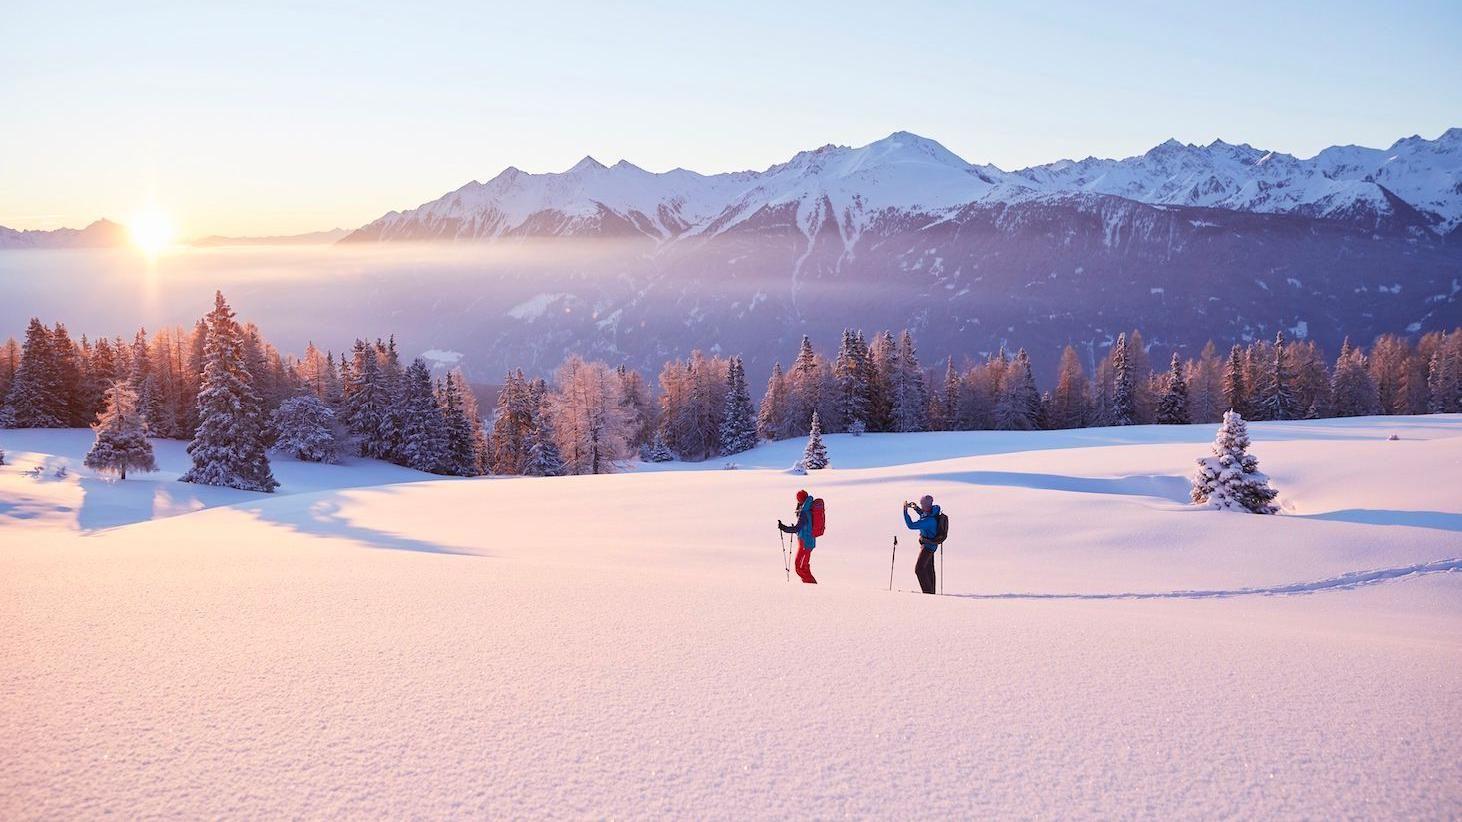 اثنان من المتزلجين على منحدر نمساوي مغطى بالثلوج خلال فصل الشتاء